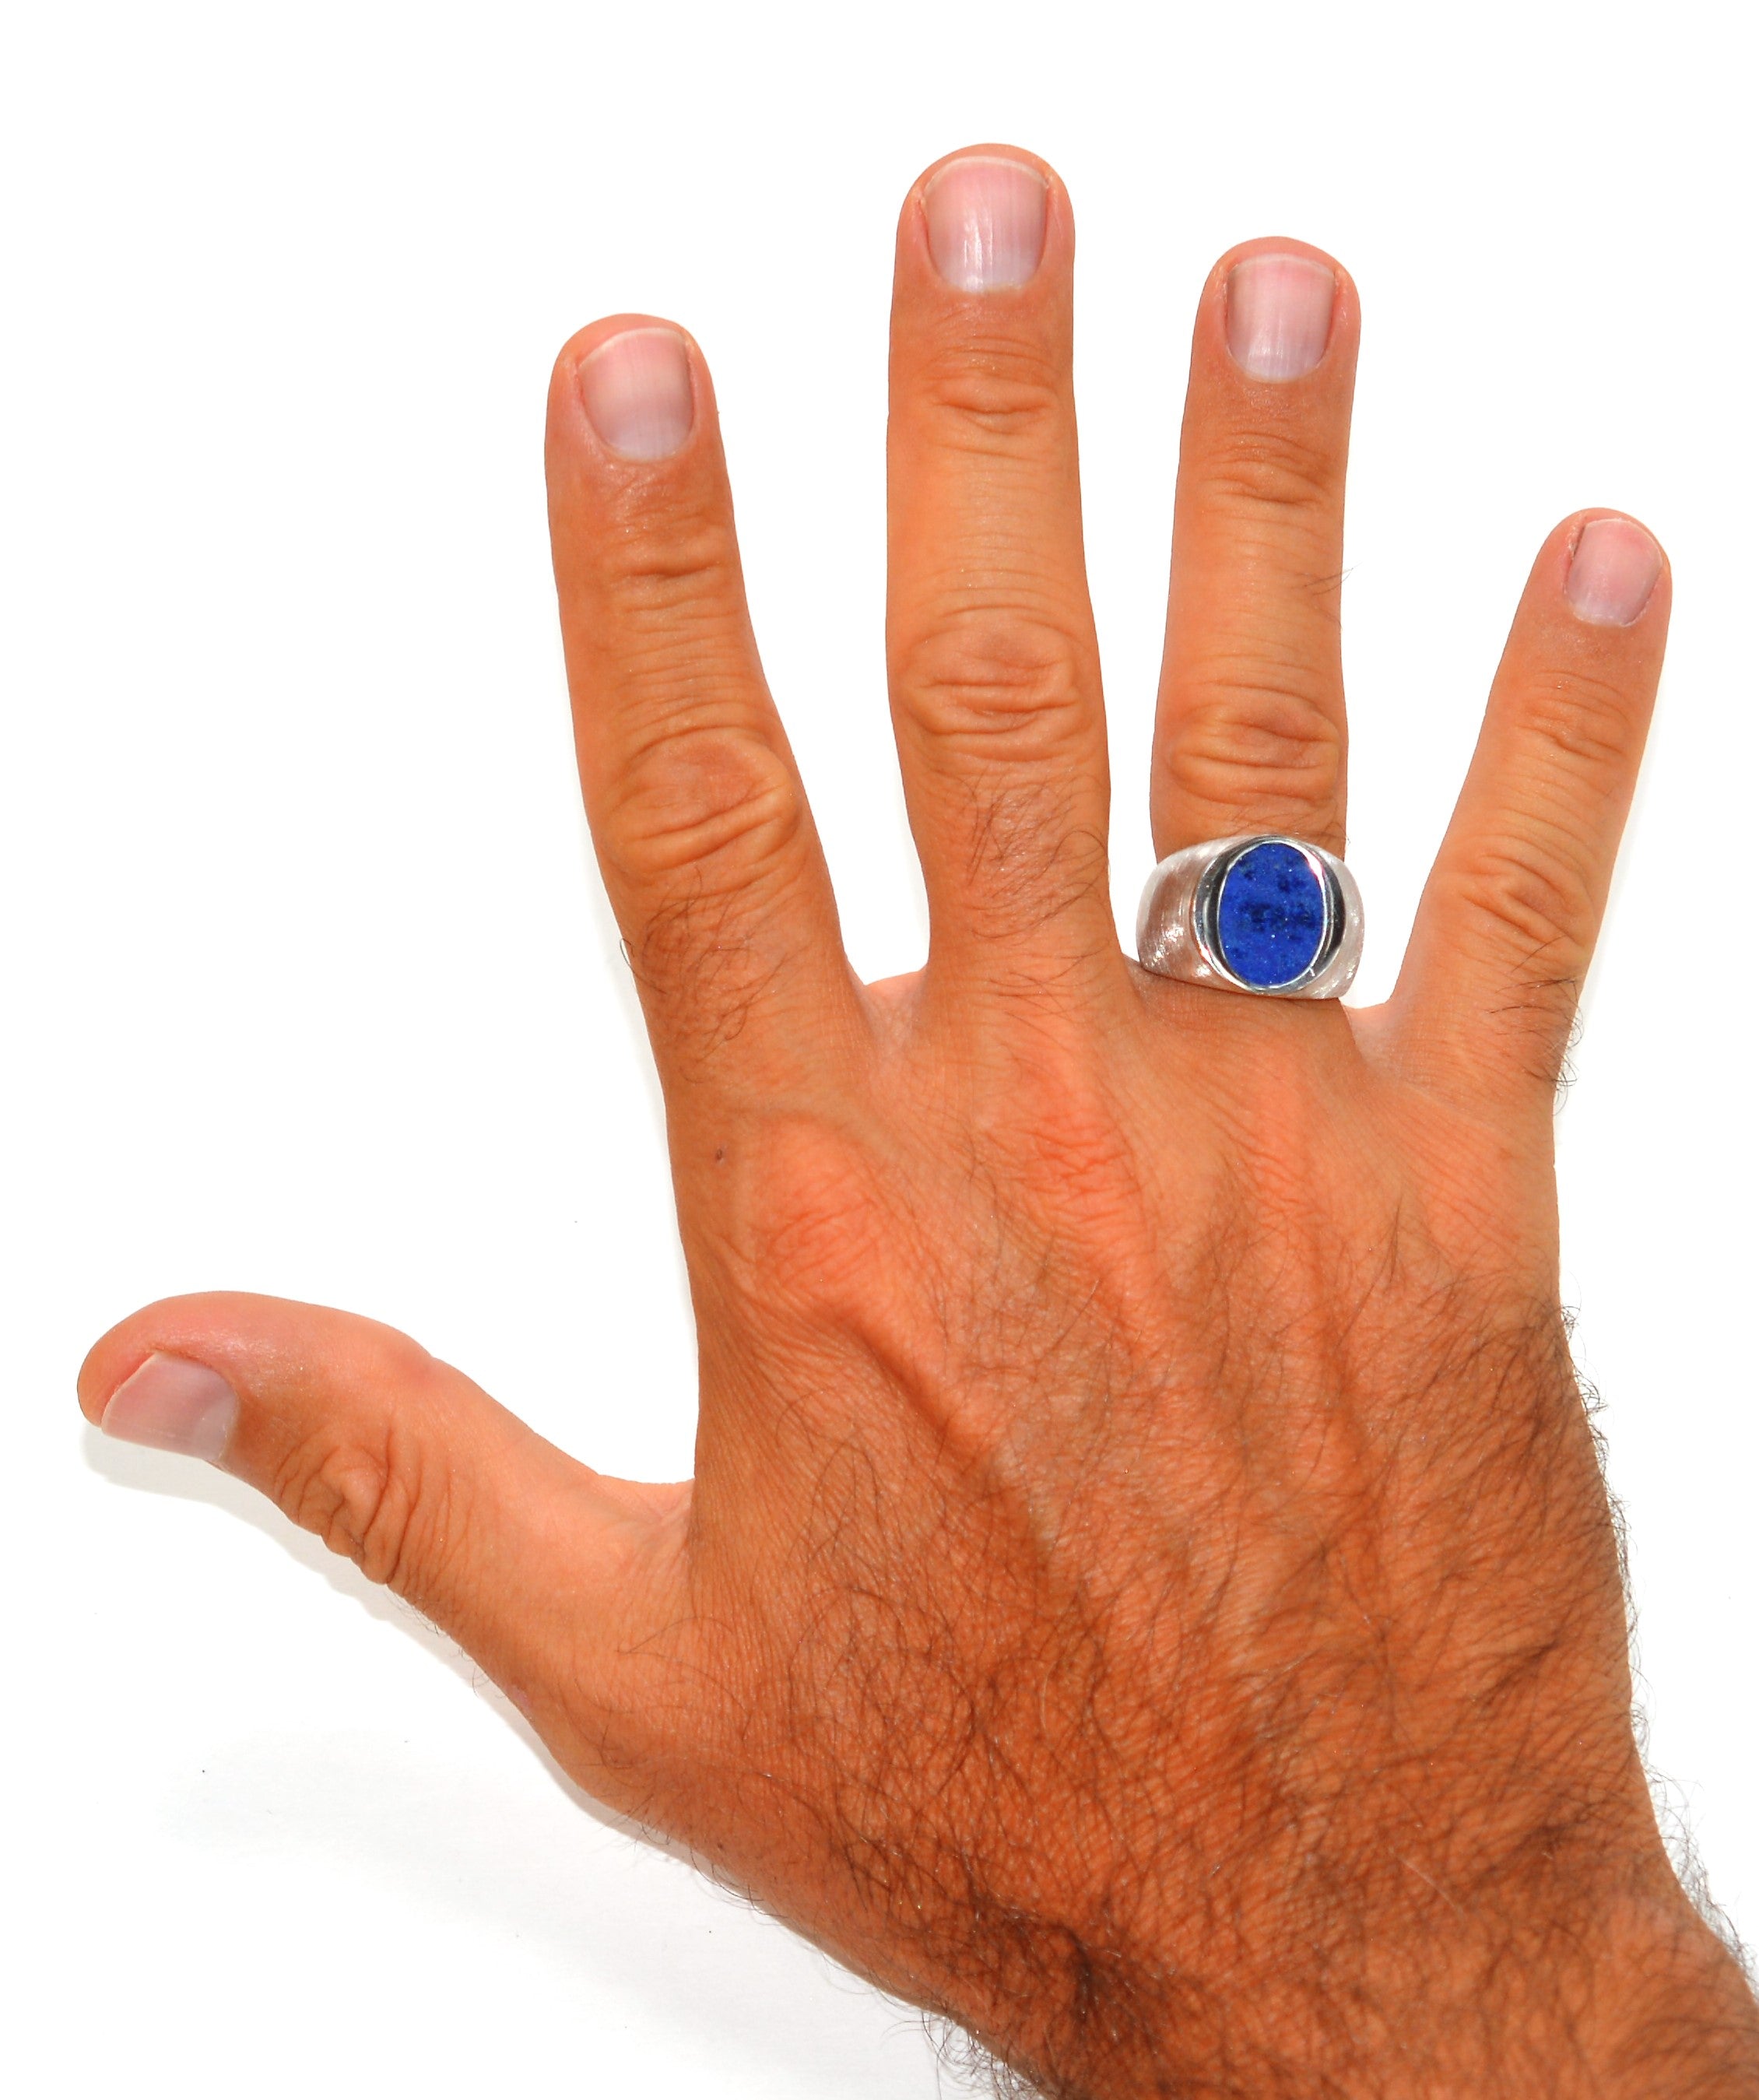 Natural Lapis Lazuli Ring 14K Solid White Gold Ring Men's Ring Statement Ring Cocktail Ring Gemstone Ring Blue Ring Vintage Ring Estate Ring